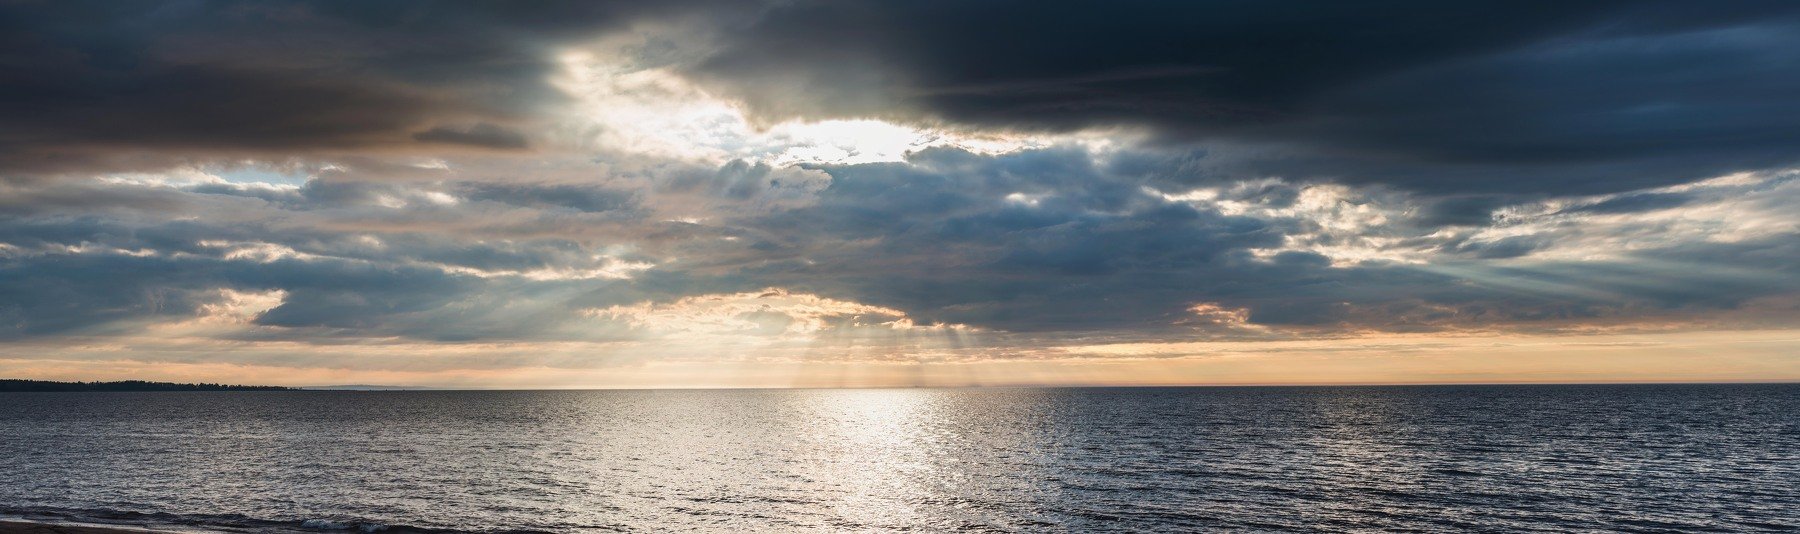 Естественный свет, Закат, Залив, Панорама, Солнце, Сосновый Бор, Финский залив, Борис Раба